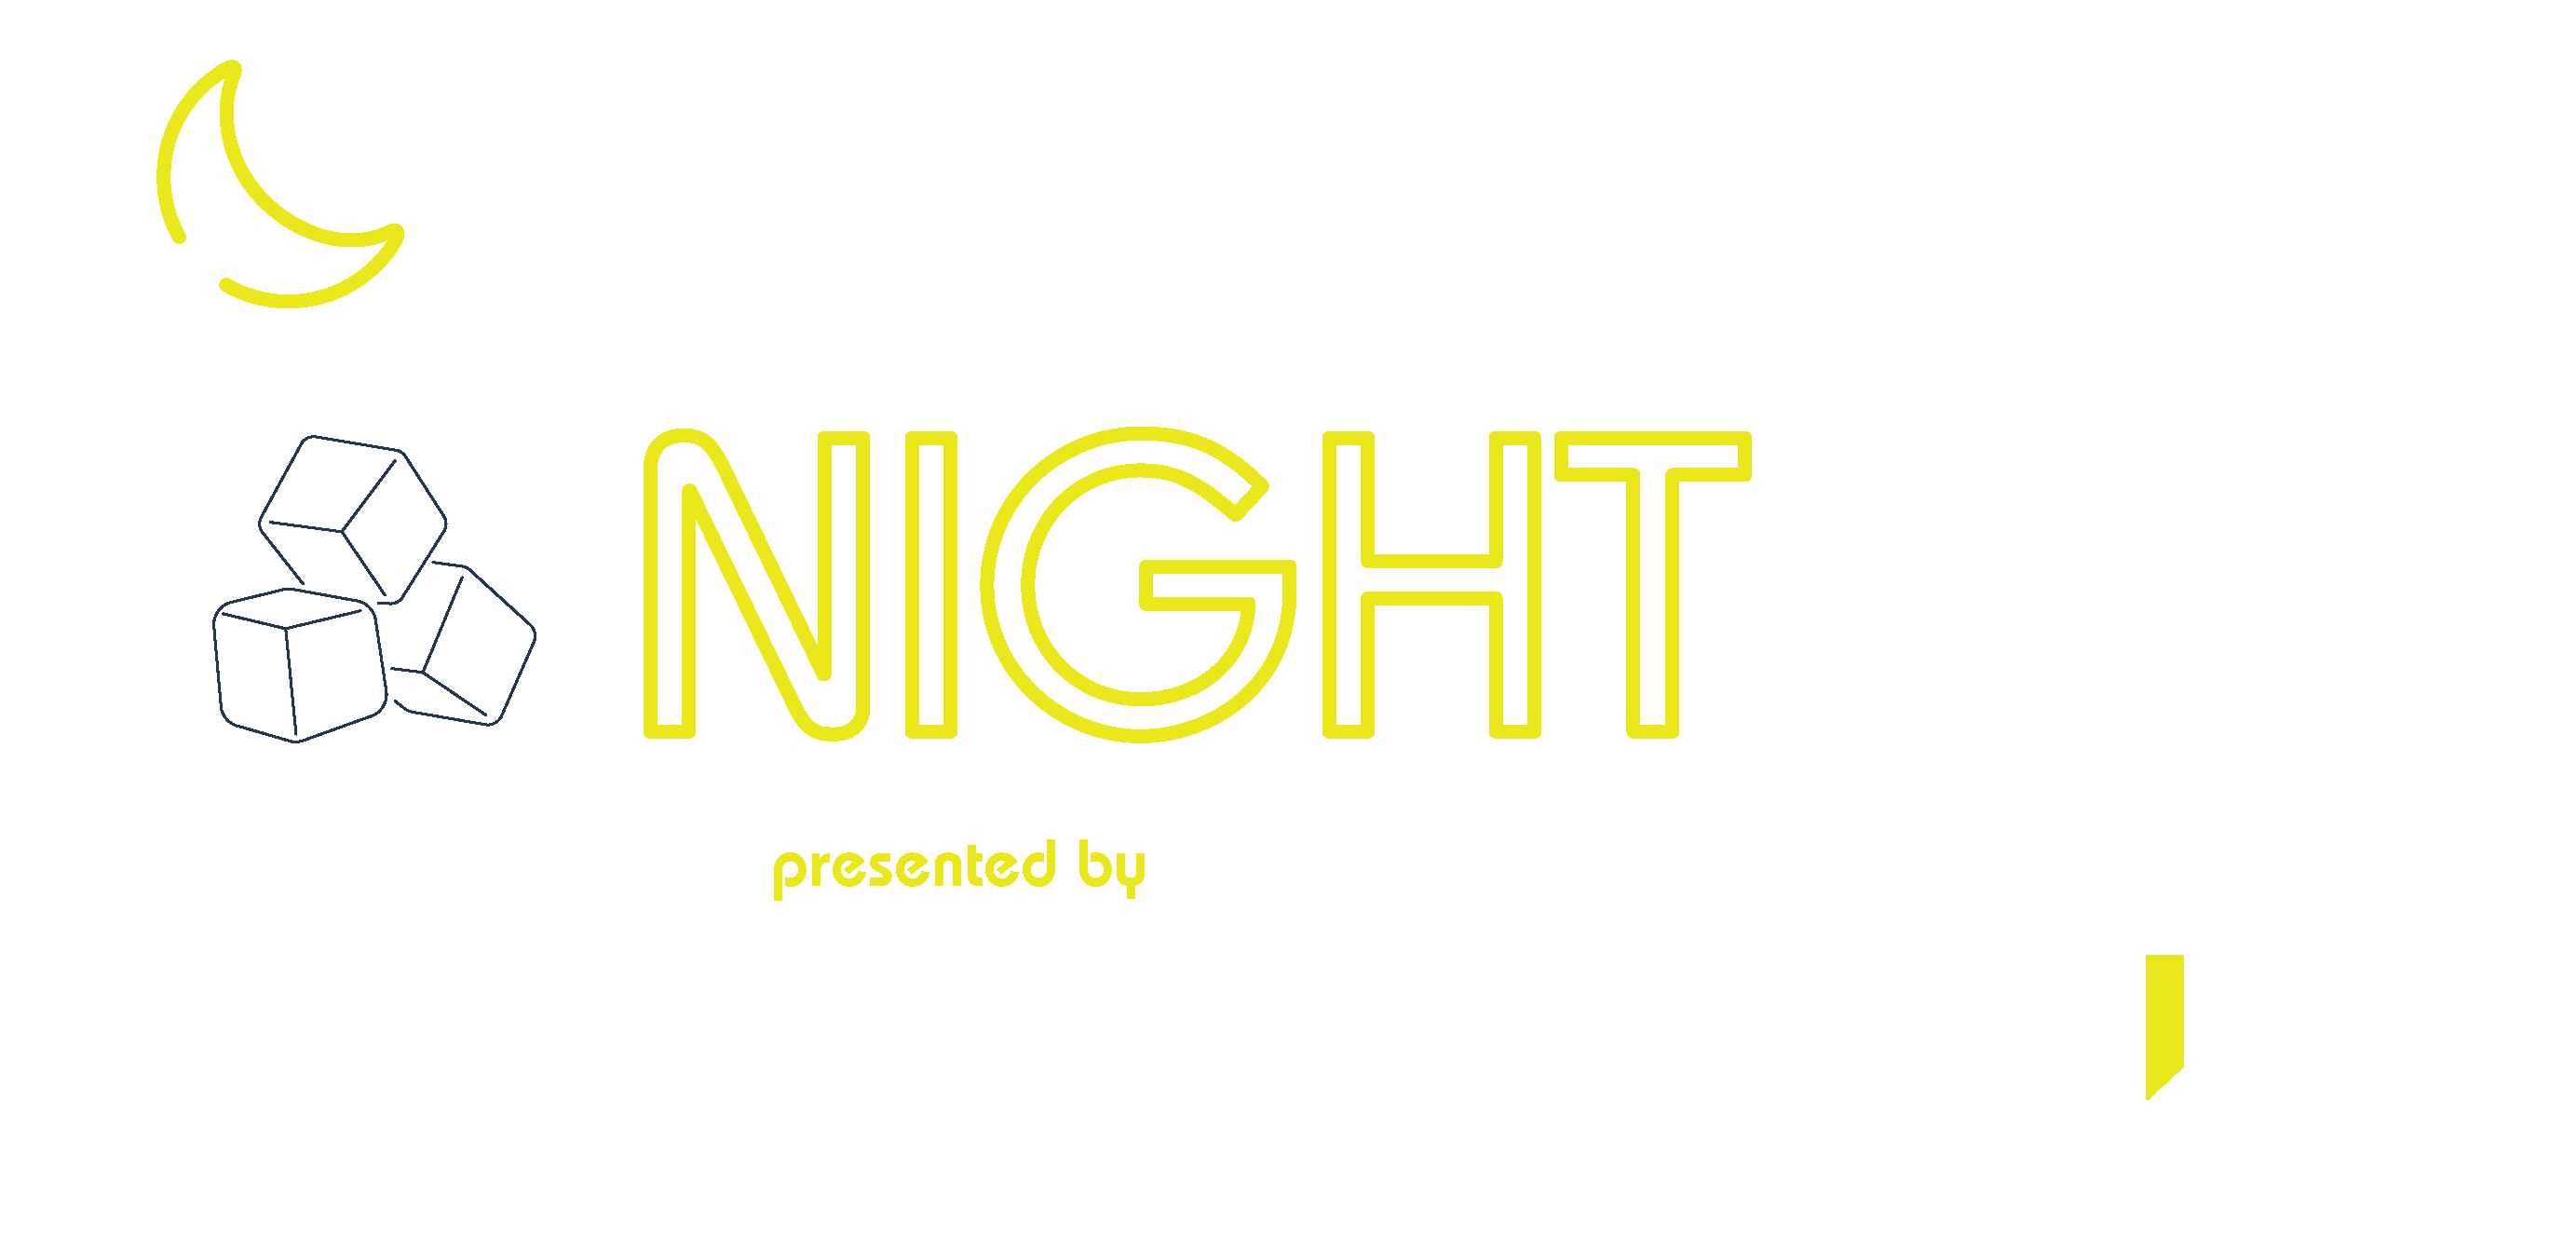 The NightCap